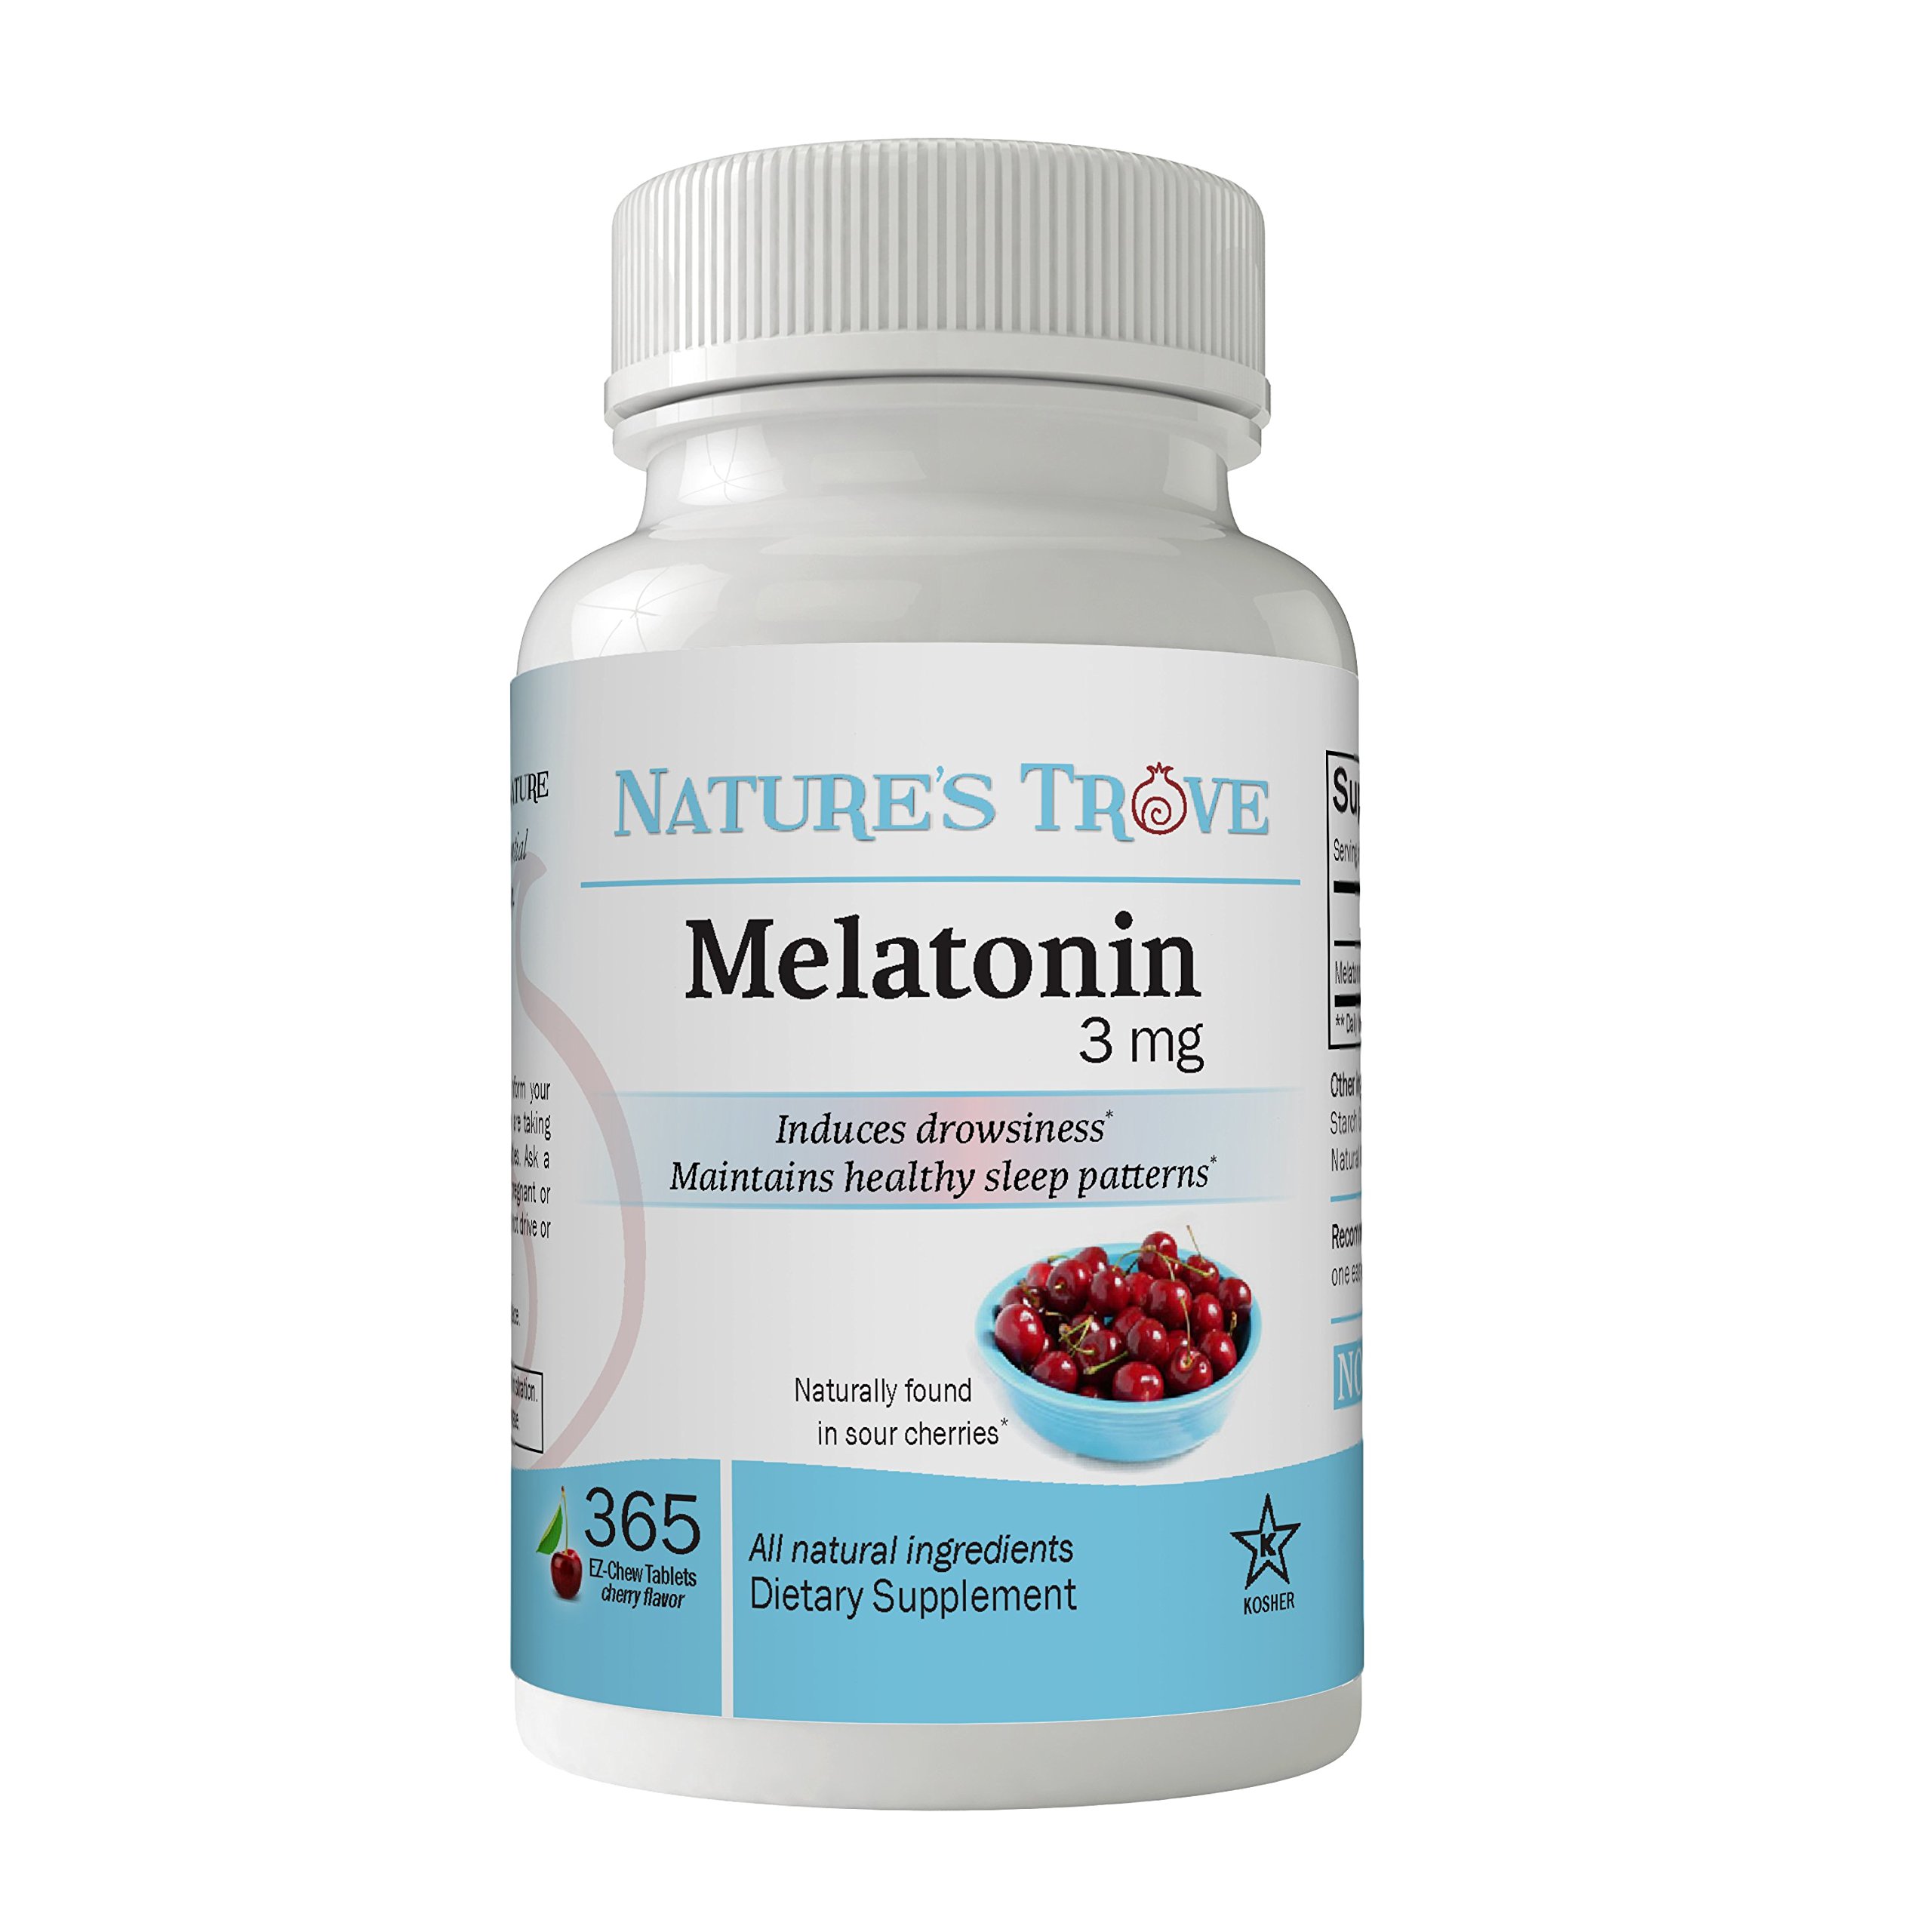 Nature's Trove Melatonin 3mg Chewable, 365 Chewable Melatonin Cherry Flavor Tablets, by Nature?s Trove